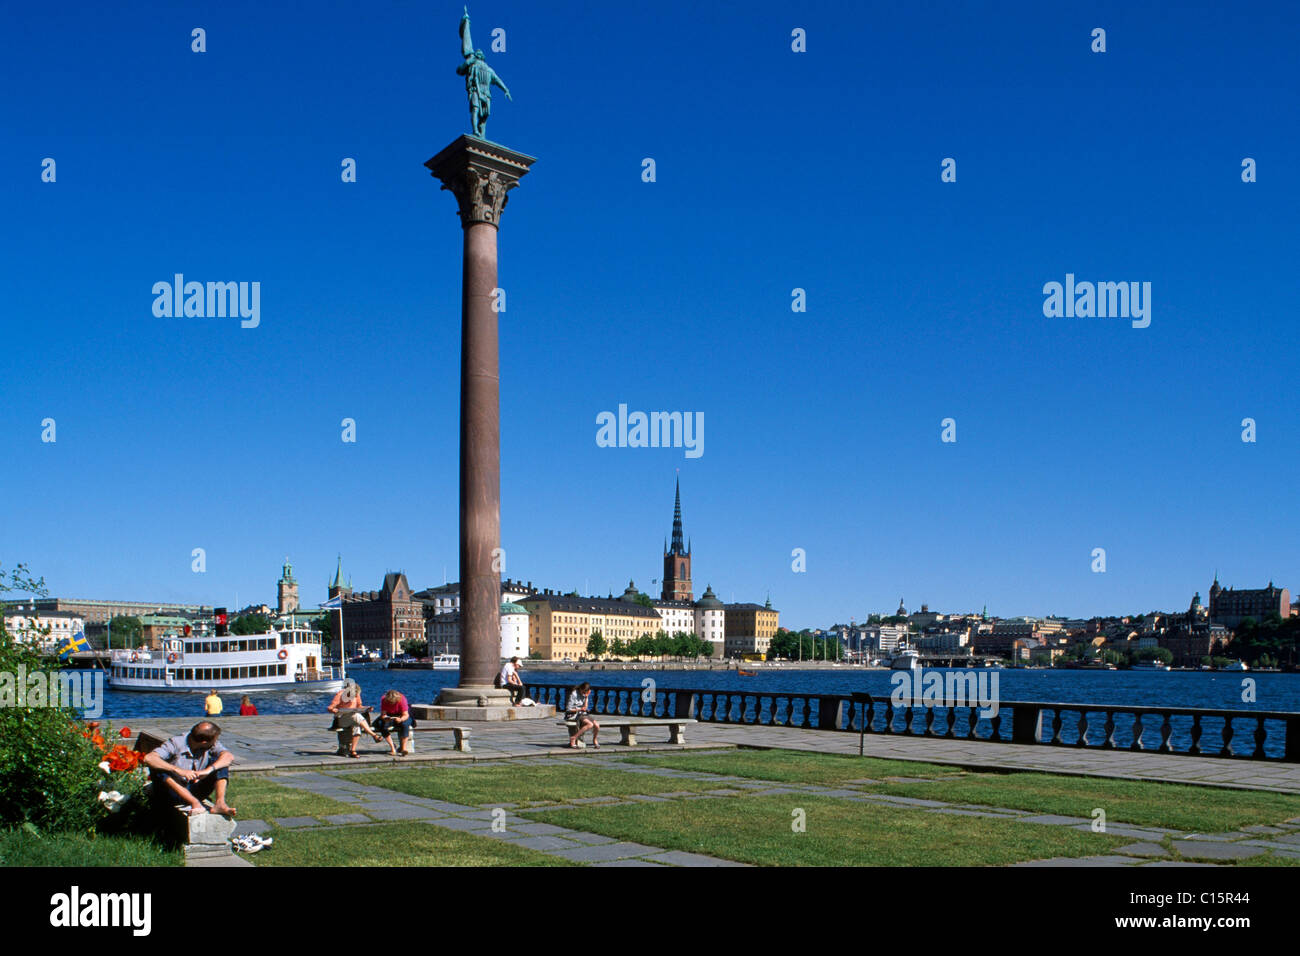 Spalte, Rathaus in Hintergrund, Riddarholmen, Stockholm, Schweden, Skandinavien Stockfoto